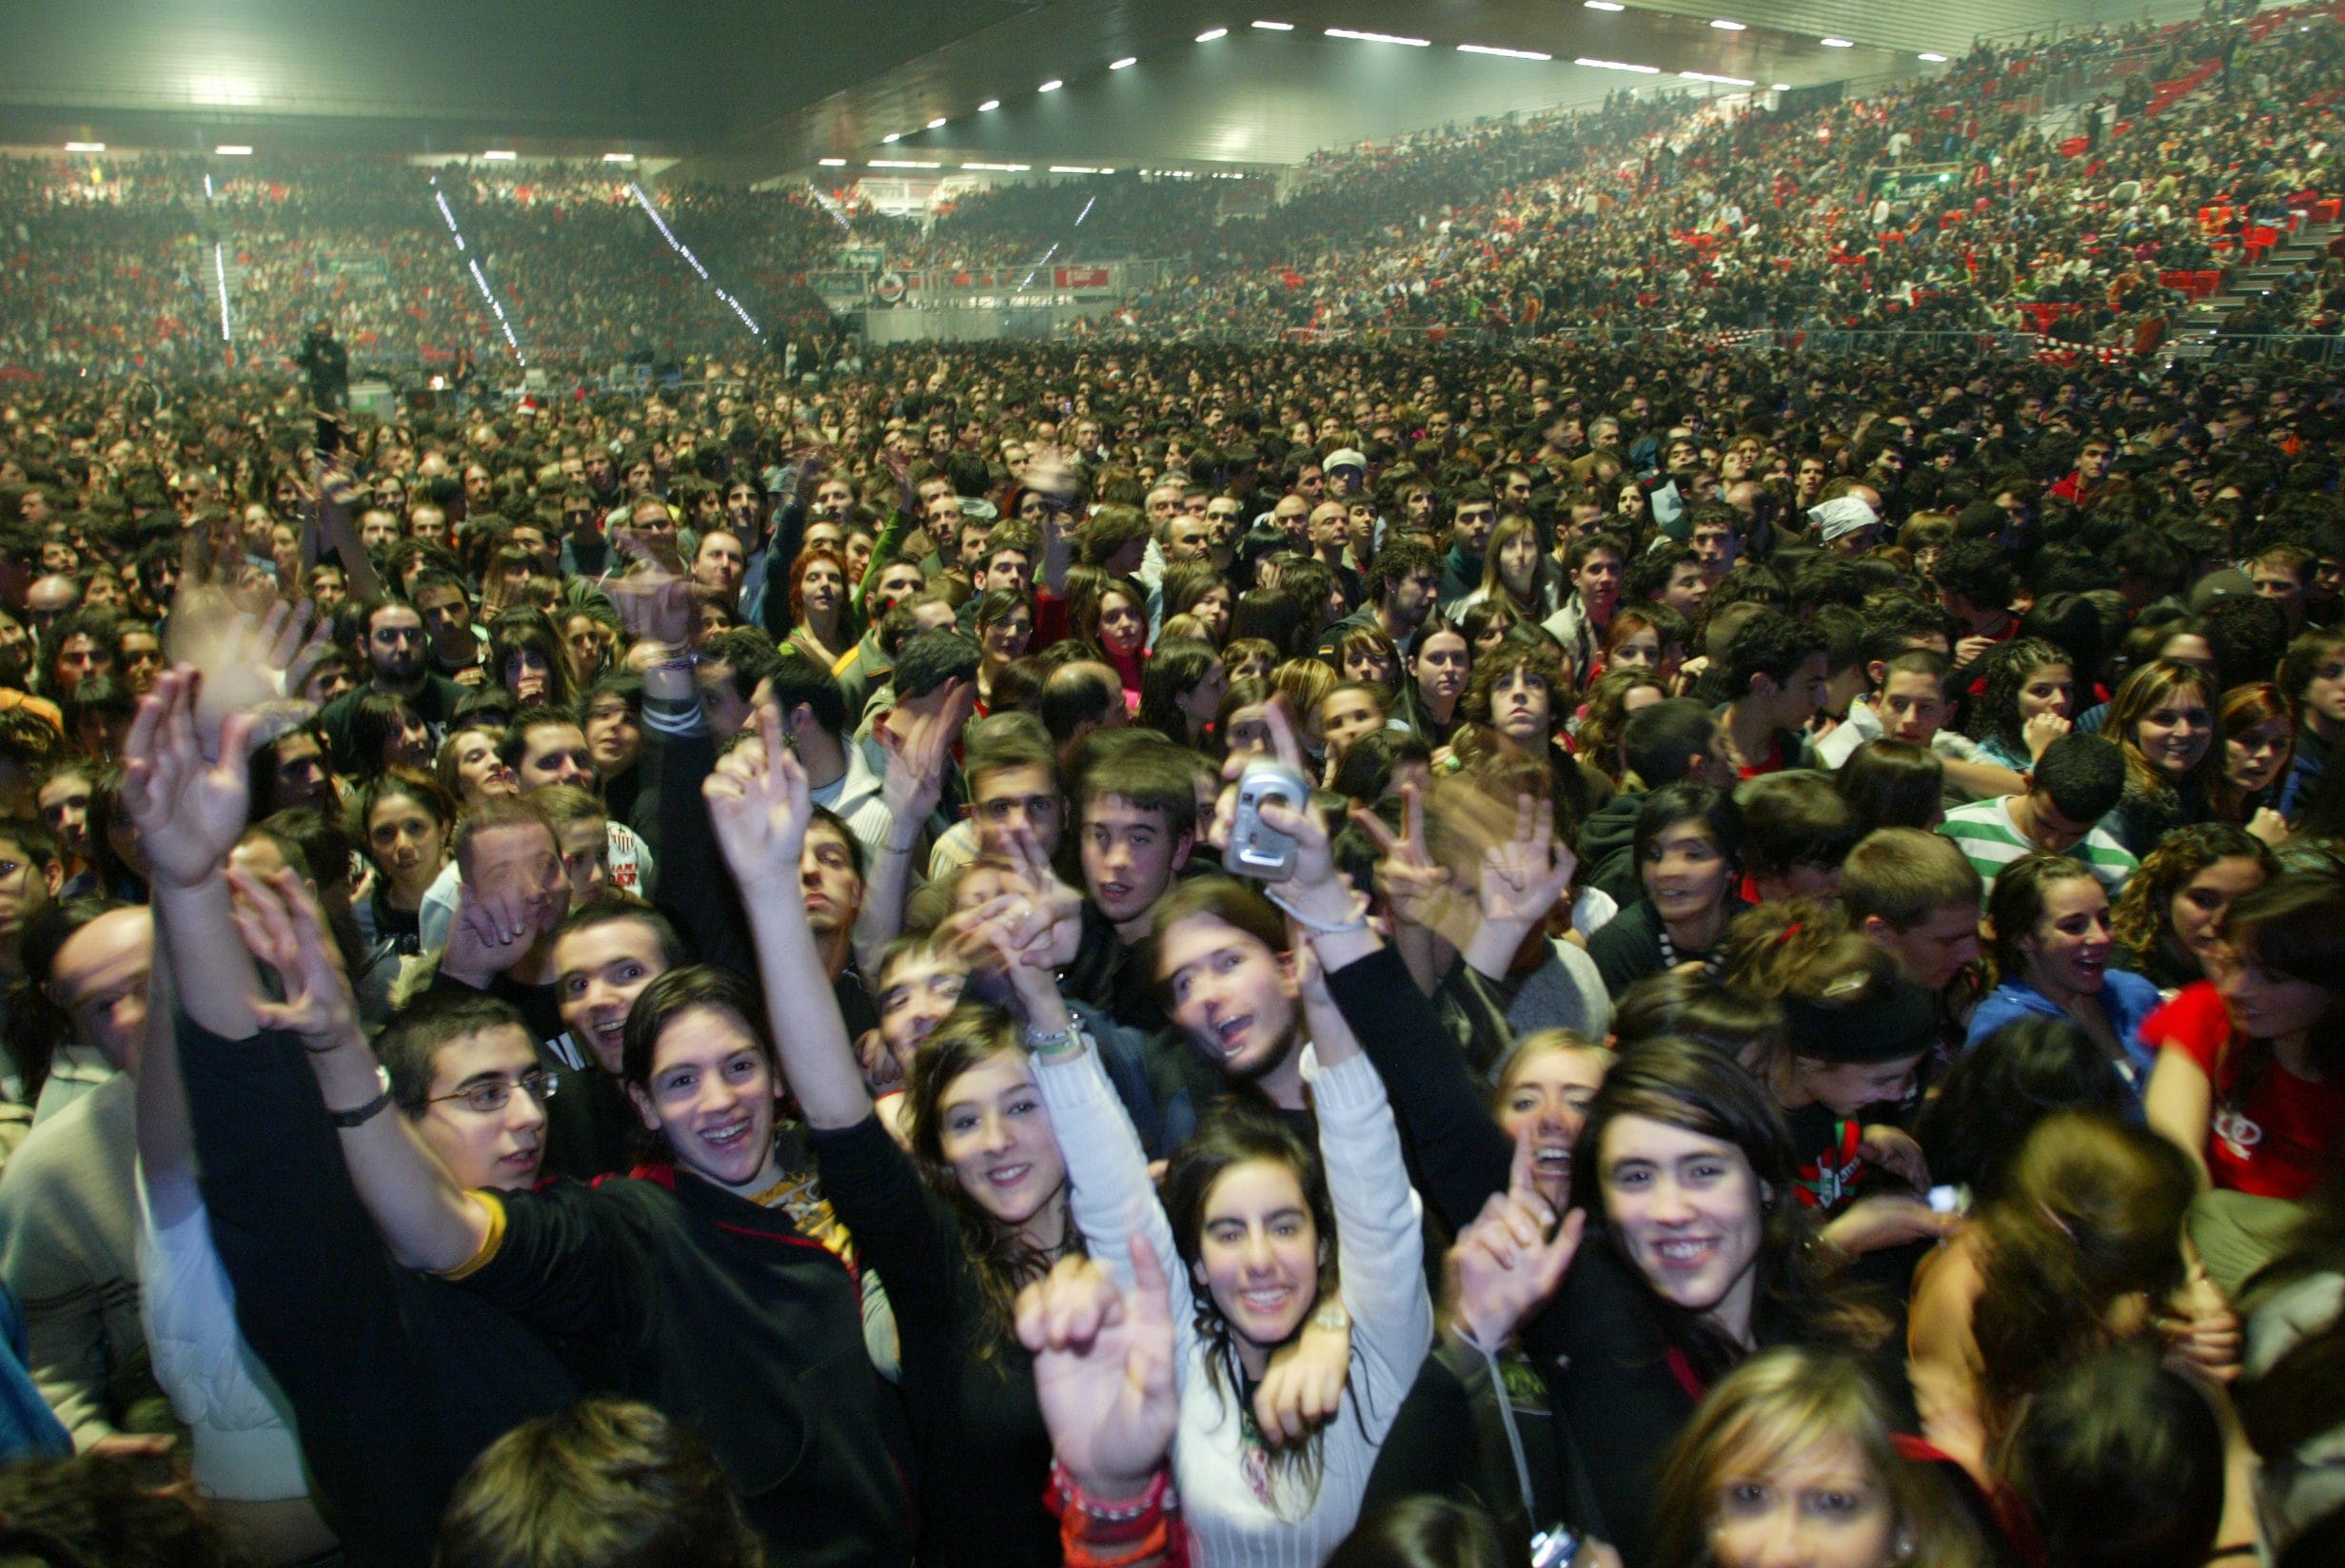 En 2006 Fito y Fitipaldis congregaron a 18.000 espectadores, la mayor cifra de asistencia registrada en un concierto en el BEC.